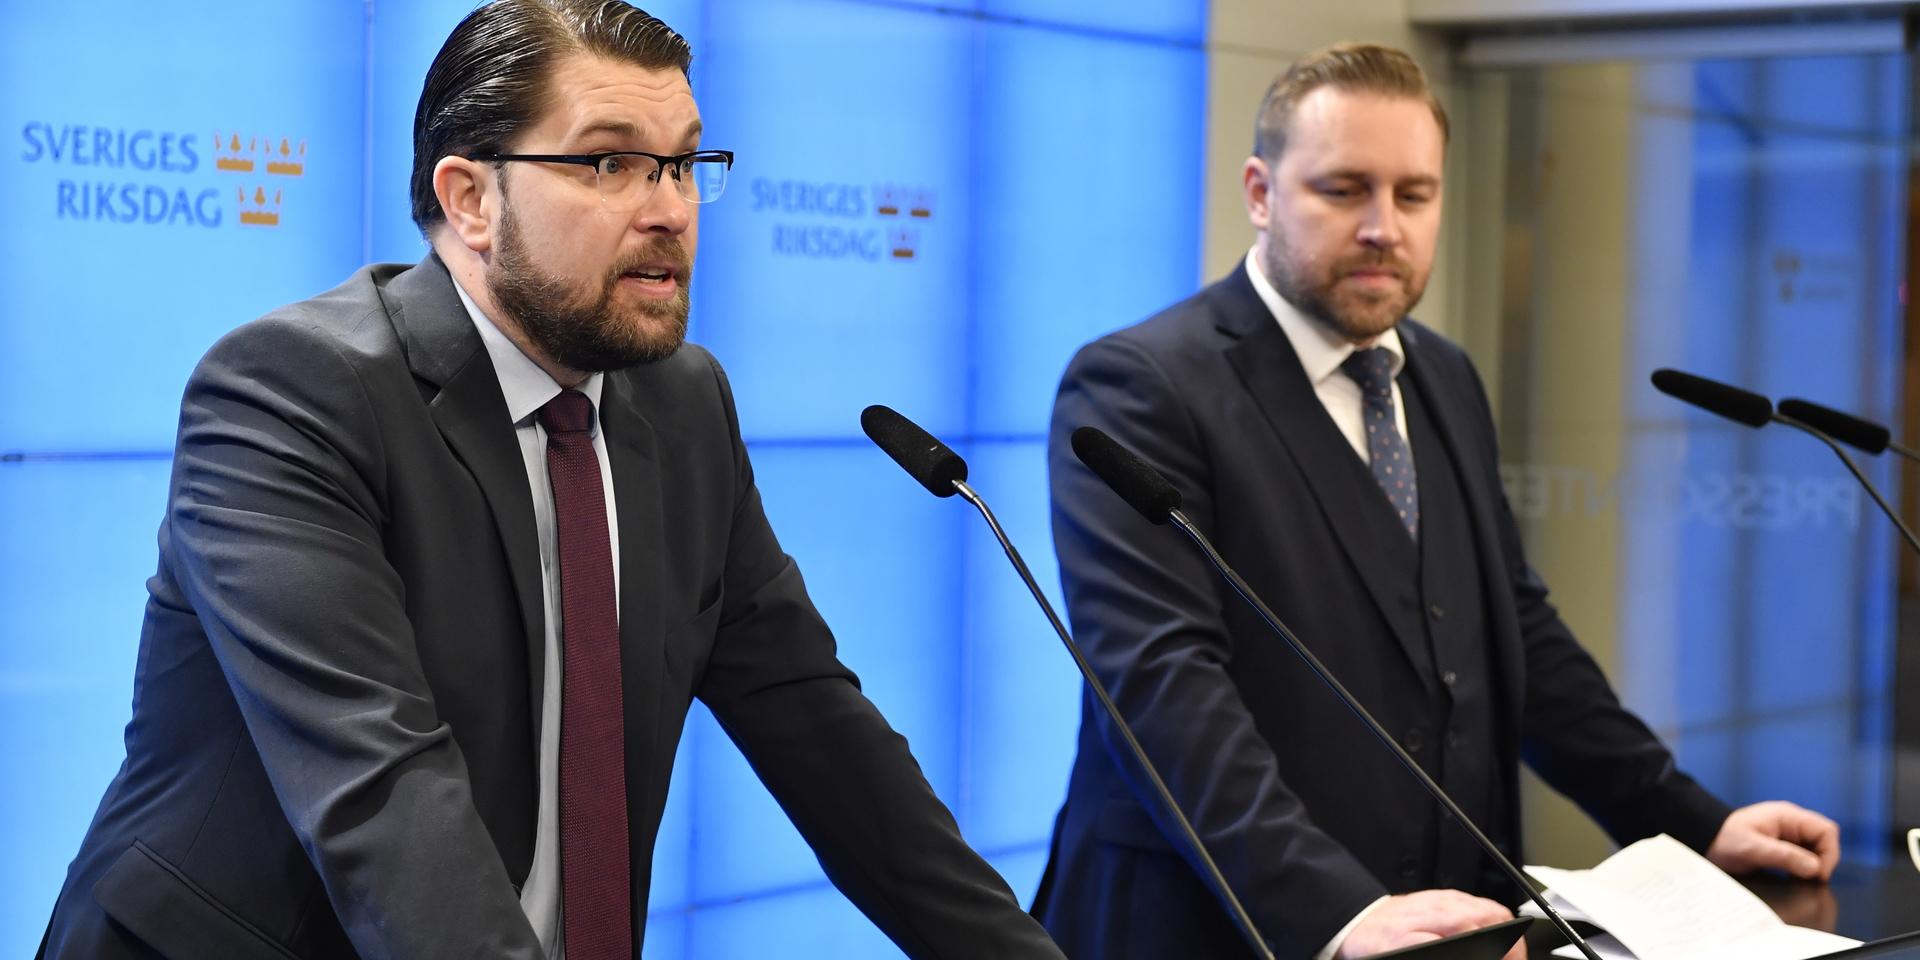 Sverigedemokraternas partiledare Jimmie Åkesson presenterar Mattias Karlsson som ny landsbygdspolitisk talesperson för partiet.